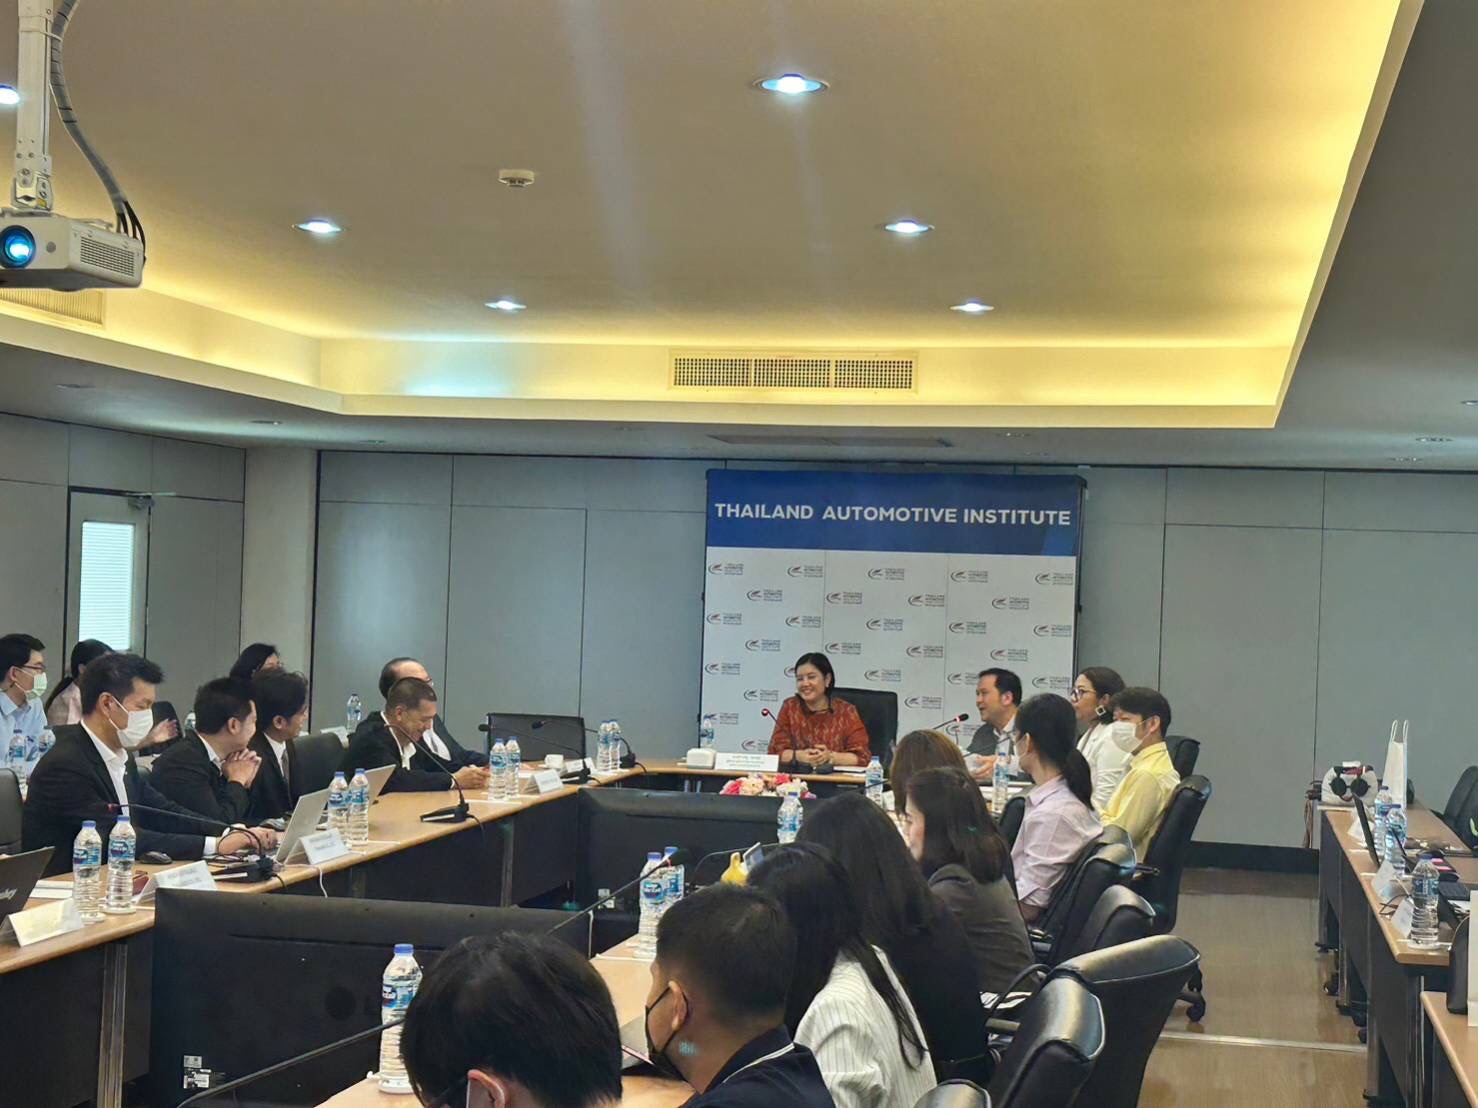 การประชุม Focus Group เรื่องมาตรการเพื่อการเปลี่ยนผ่านของผู้ประกอบการในการเข้าสู่อุตสาหกรรมยานยนต์สมัยใหม่ ภายใต้โครงการยกระดับผู้ผลิตชิ้นส่วนยานยนต์ไทย เพื่อเตรียมความพร้อมในการเข้าสู่ห่วงโซ่อุปทานขอ